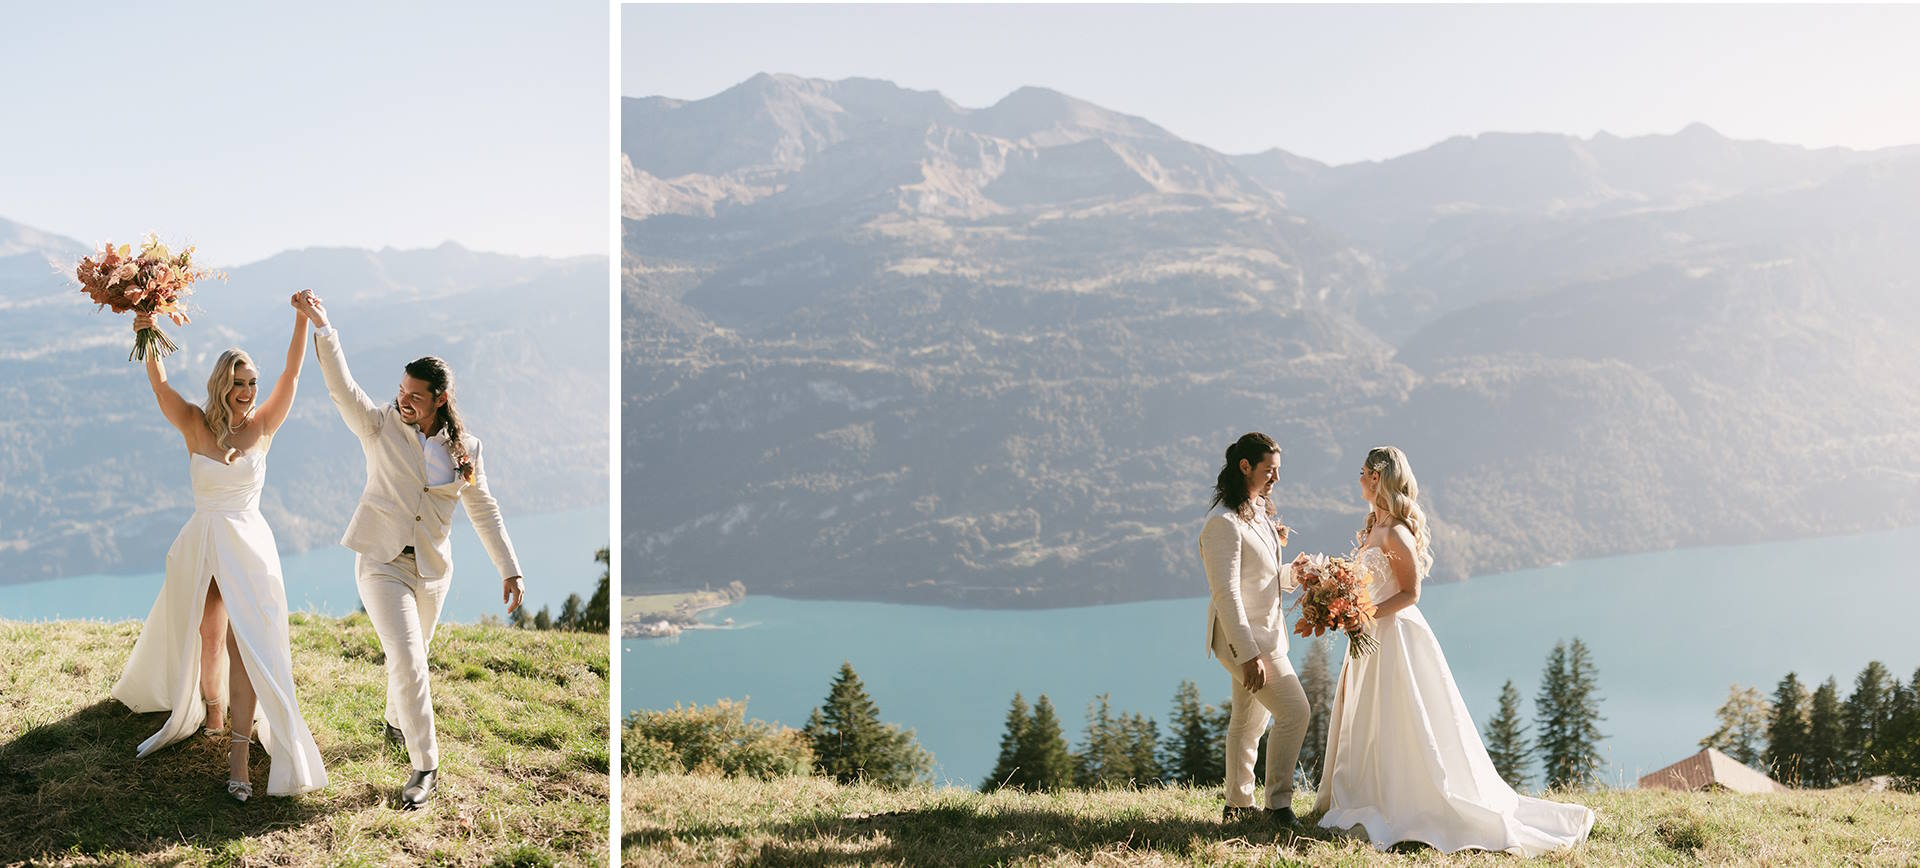 Swiss Alps Elopement Wedding Ceremony